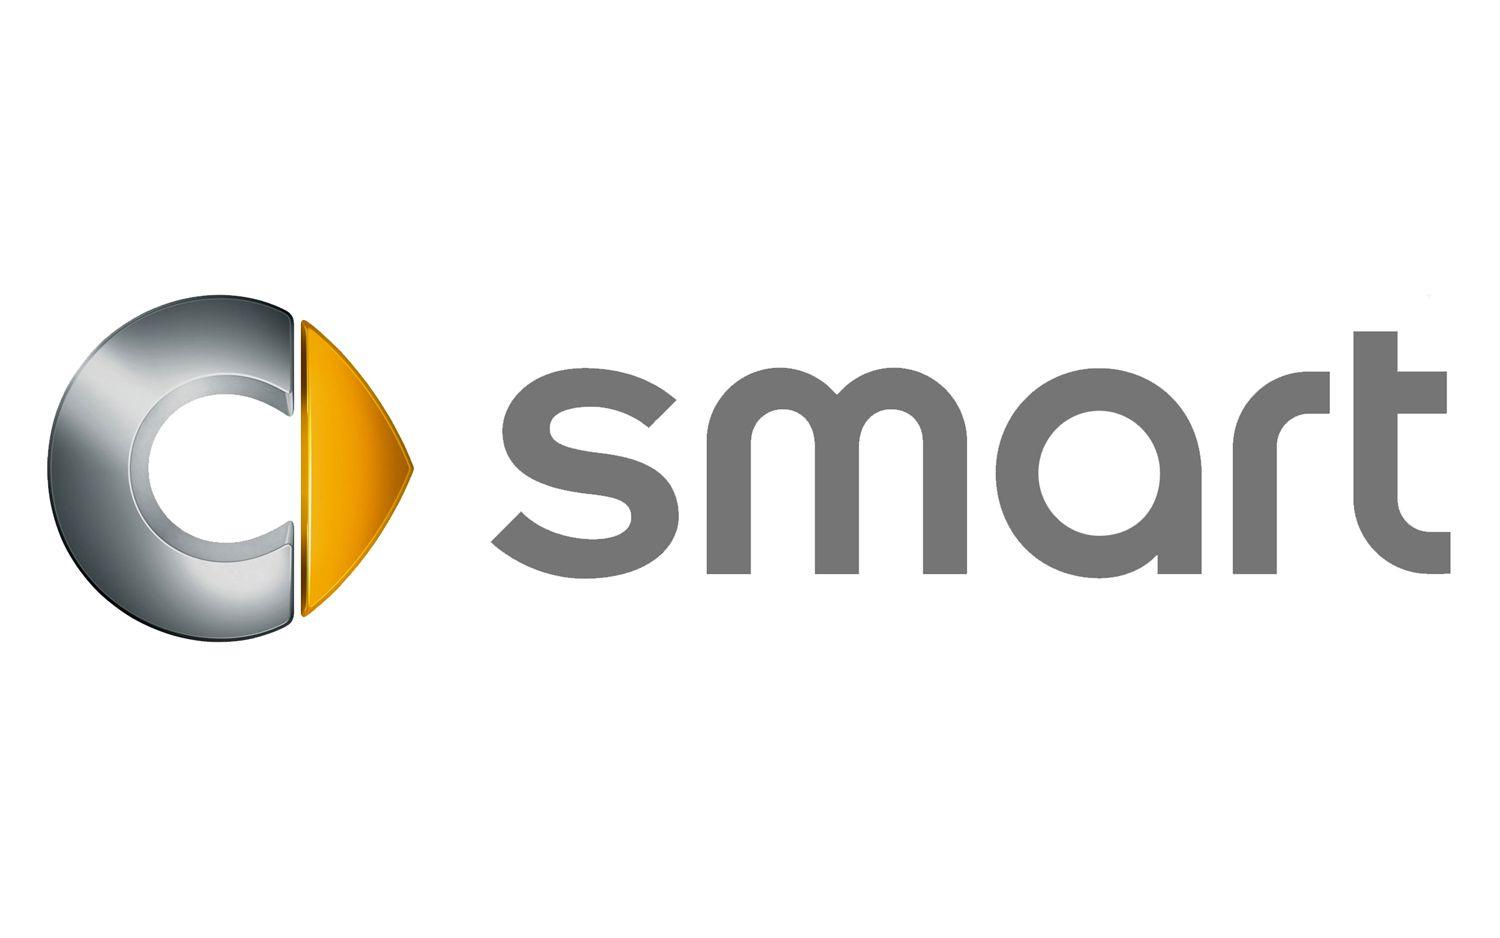 Smart Auto Logo - smart Logo, smart Car Symbol Meaning And History | Car Brand Names.com